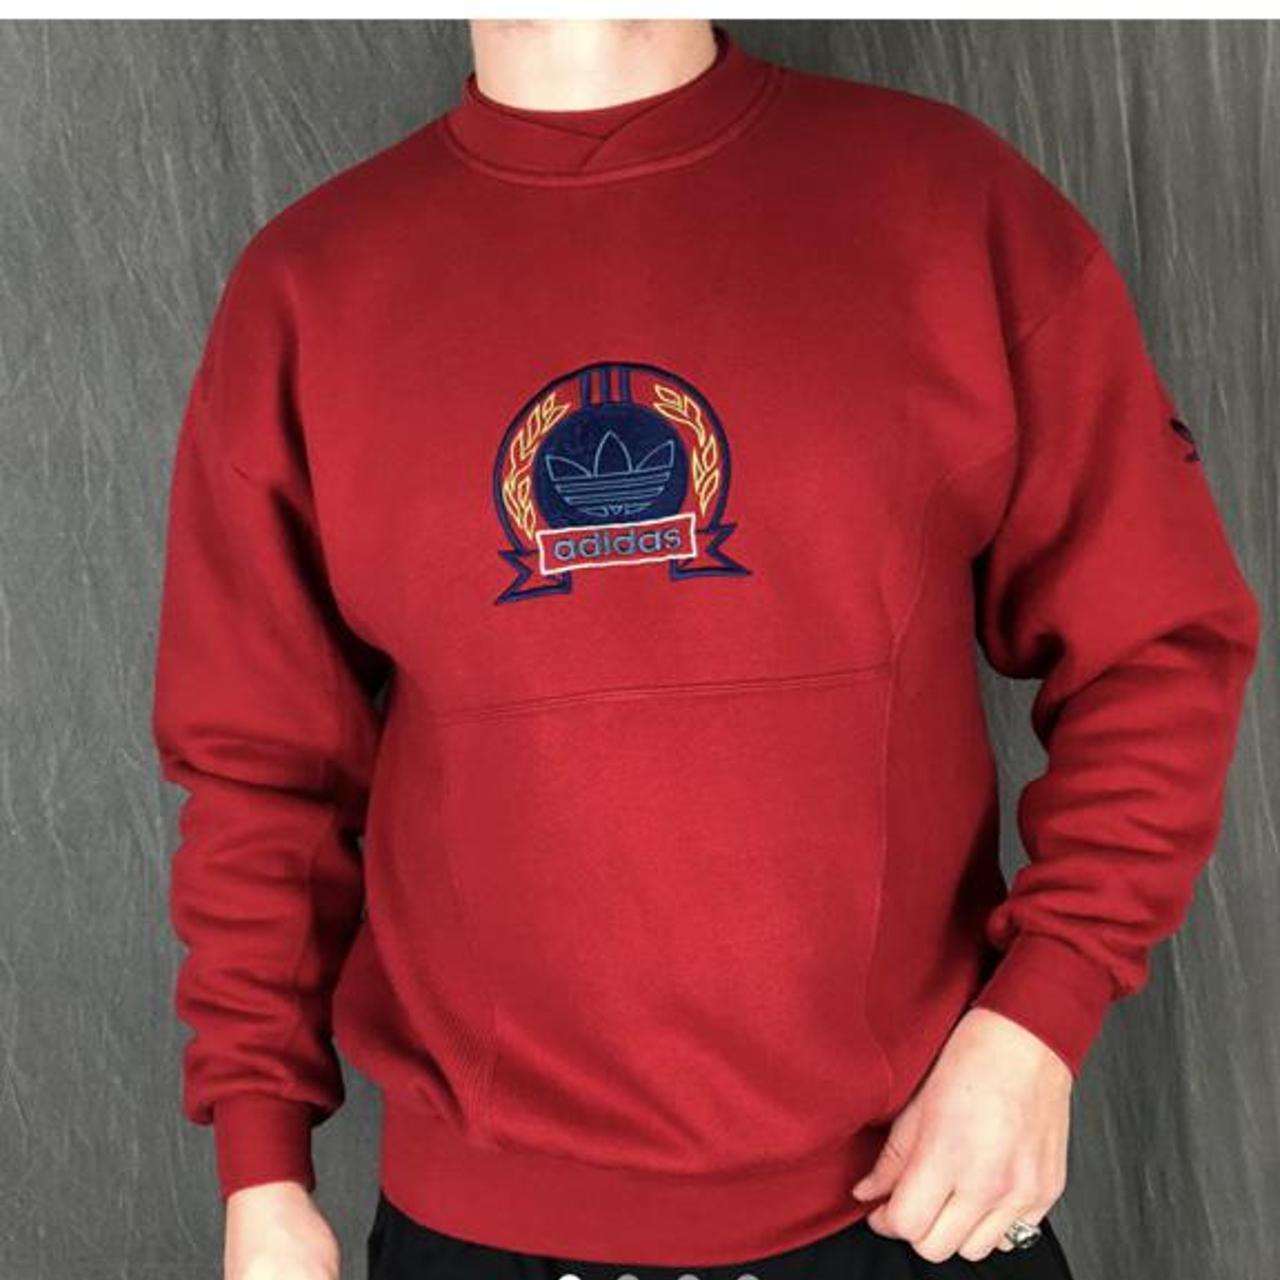 Product Image 4 - Vintage embroidered Adidas sweatshirt 

•FREE